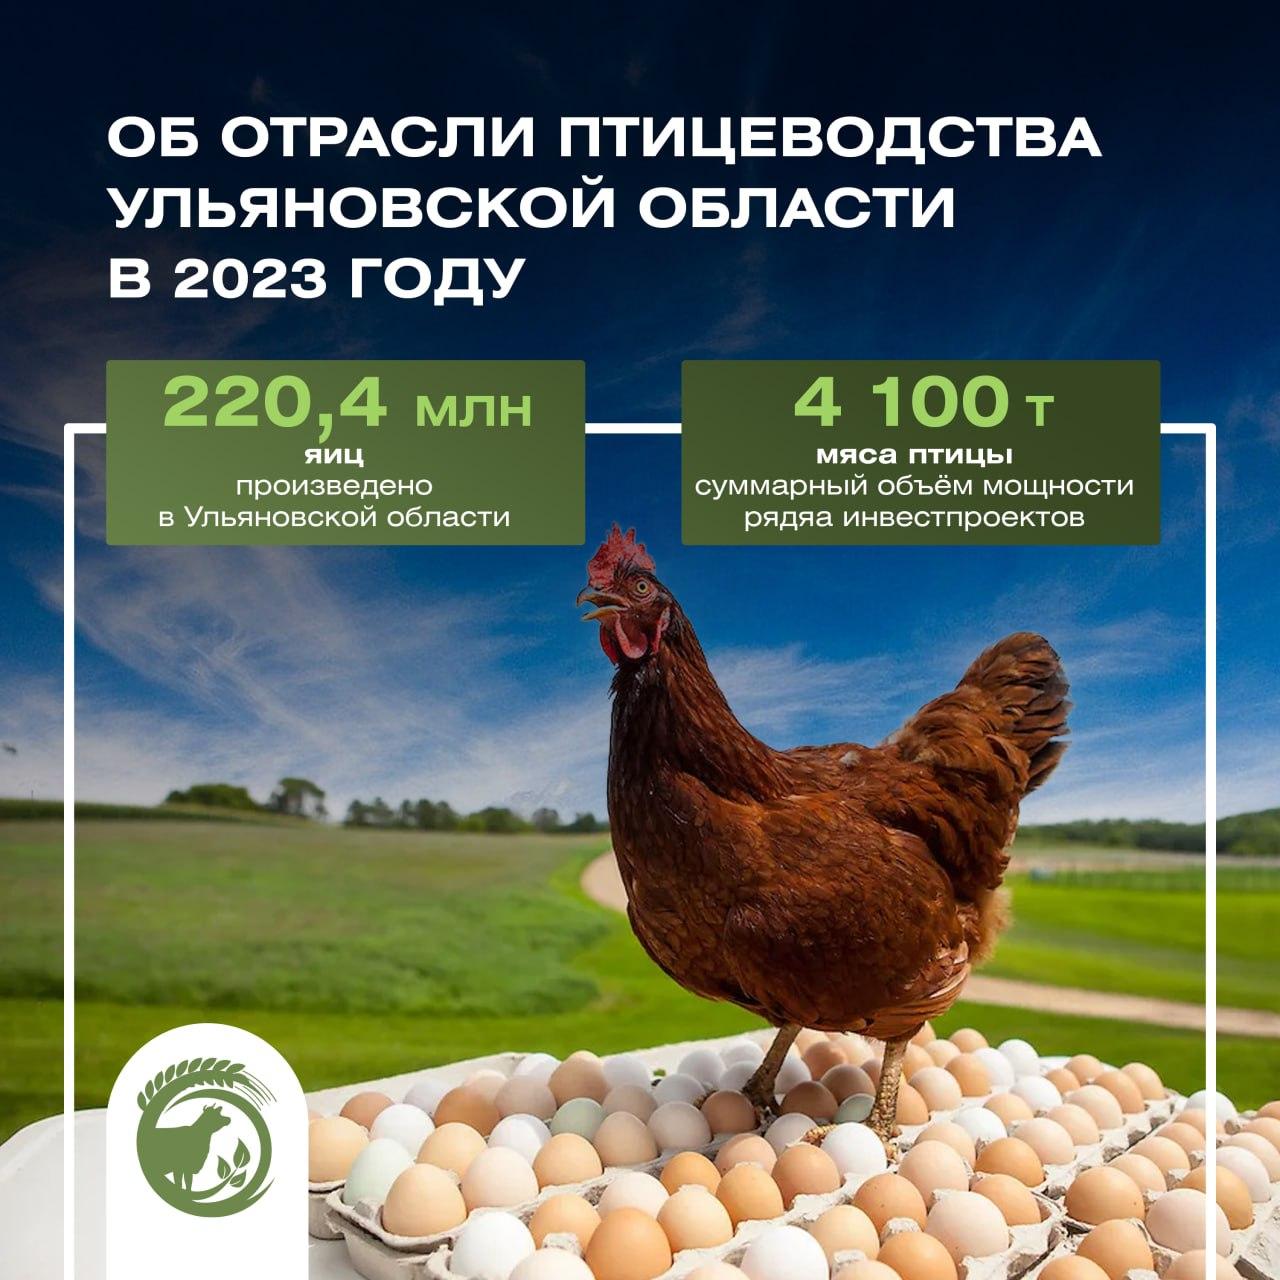 По итогам 2023 года производство яиц в Ульяновской области составило 220,4 млн штук, в том числе в сельхозорганизациях произведено 119,7 млн штук, что на 300 тысяч штук больше, чем в 2022 году.